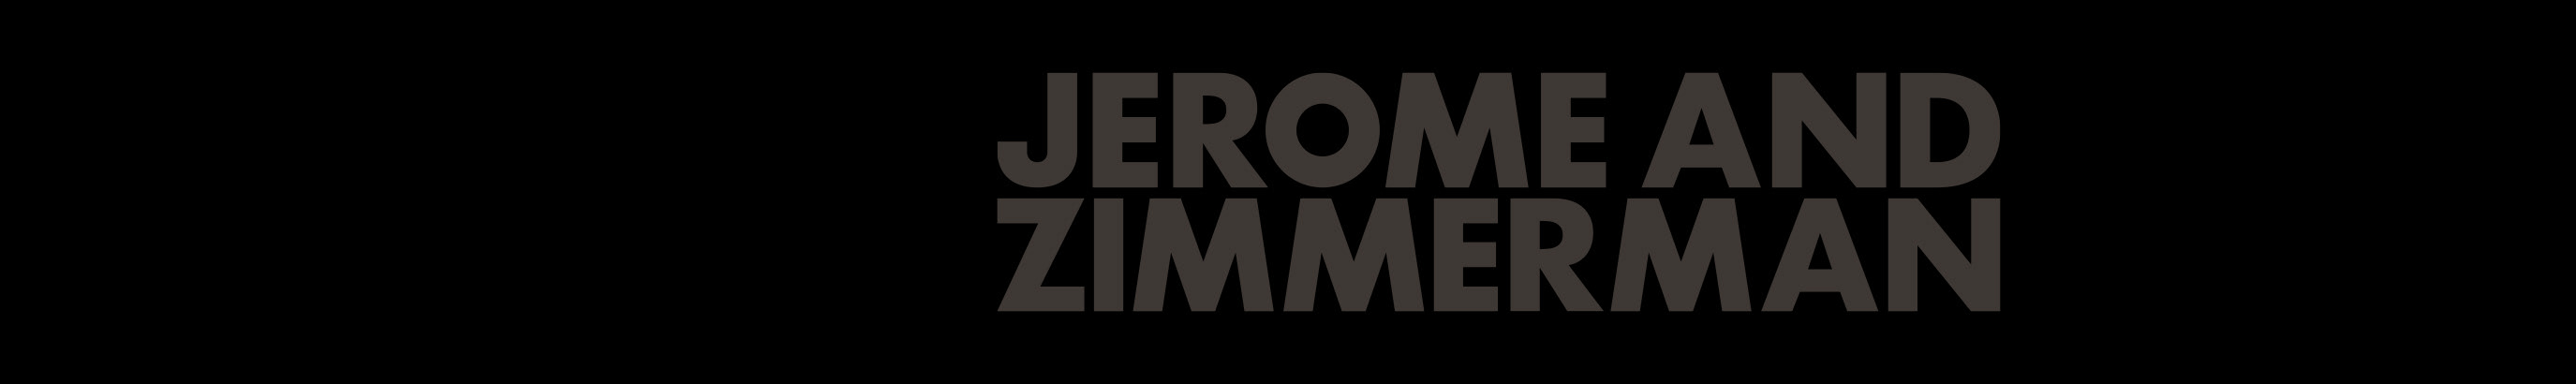 Banner del profilo di Jerome & Zimmerman